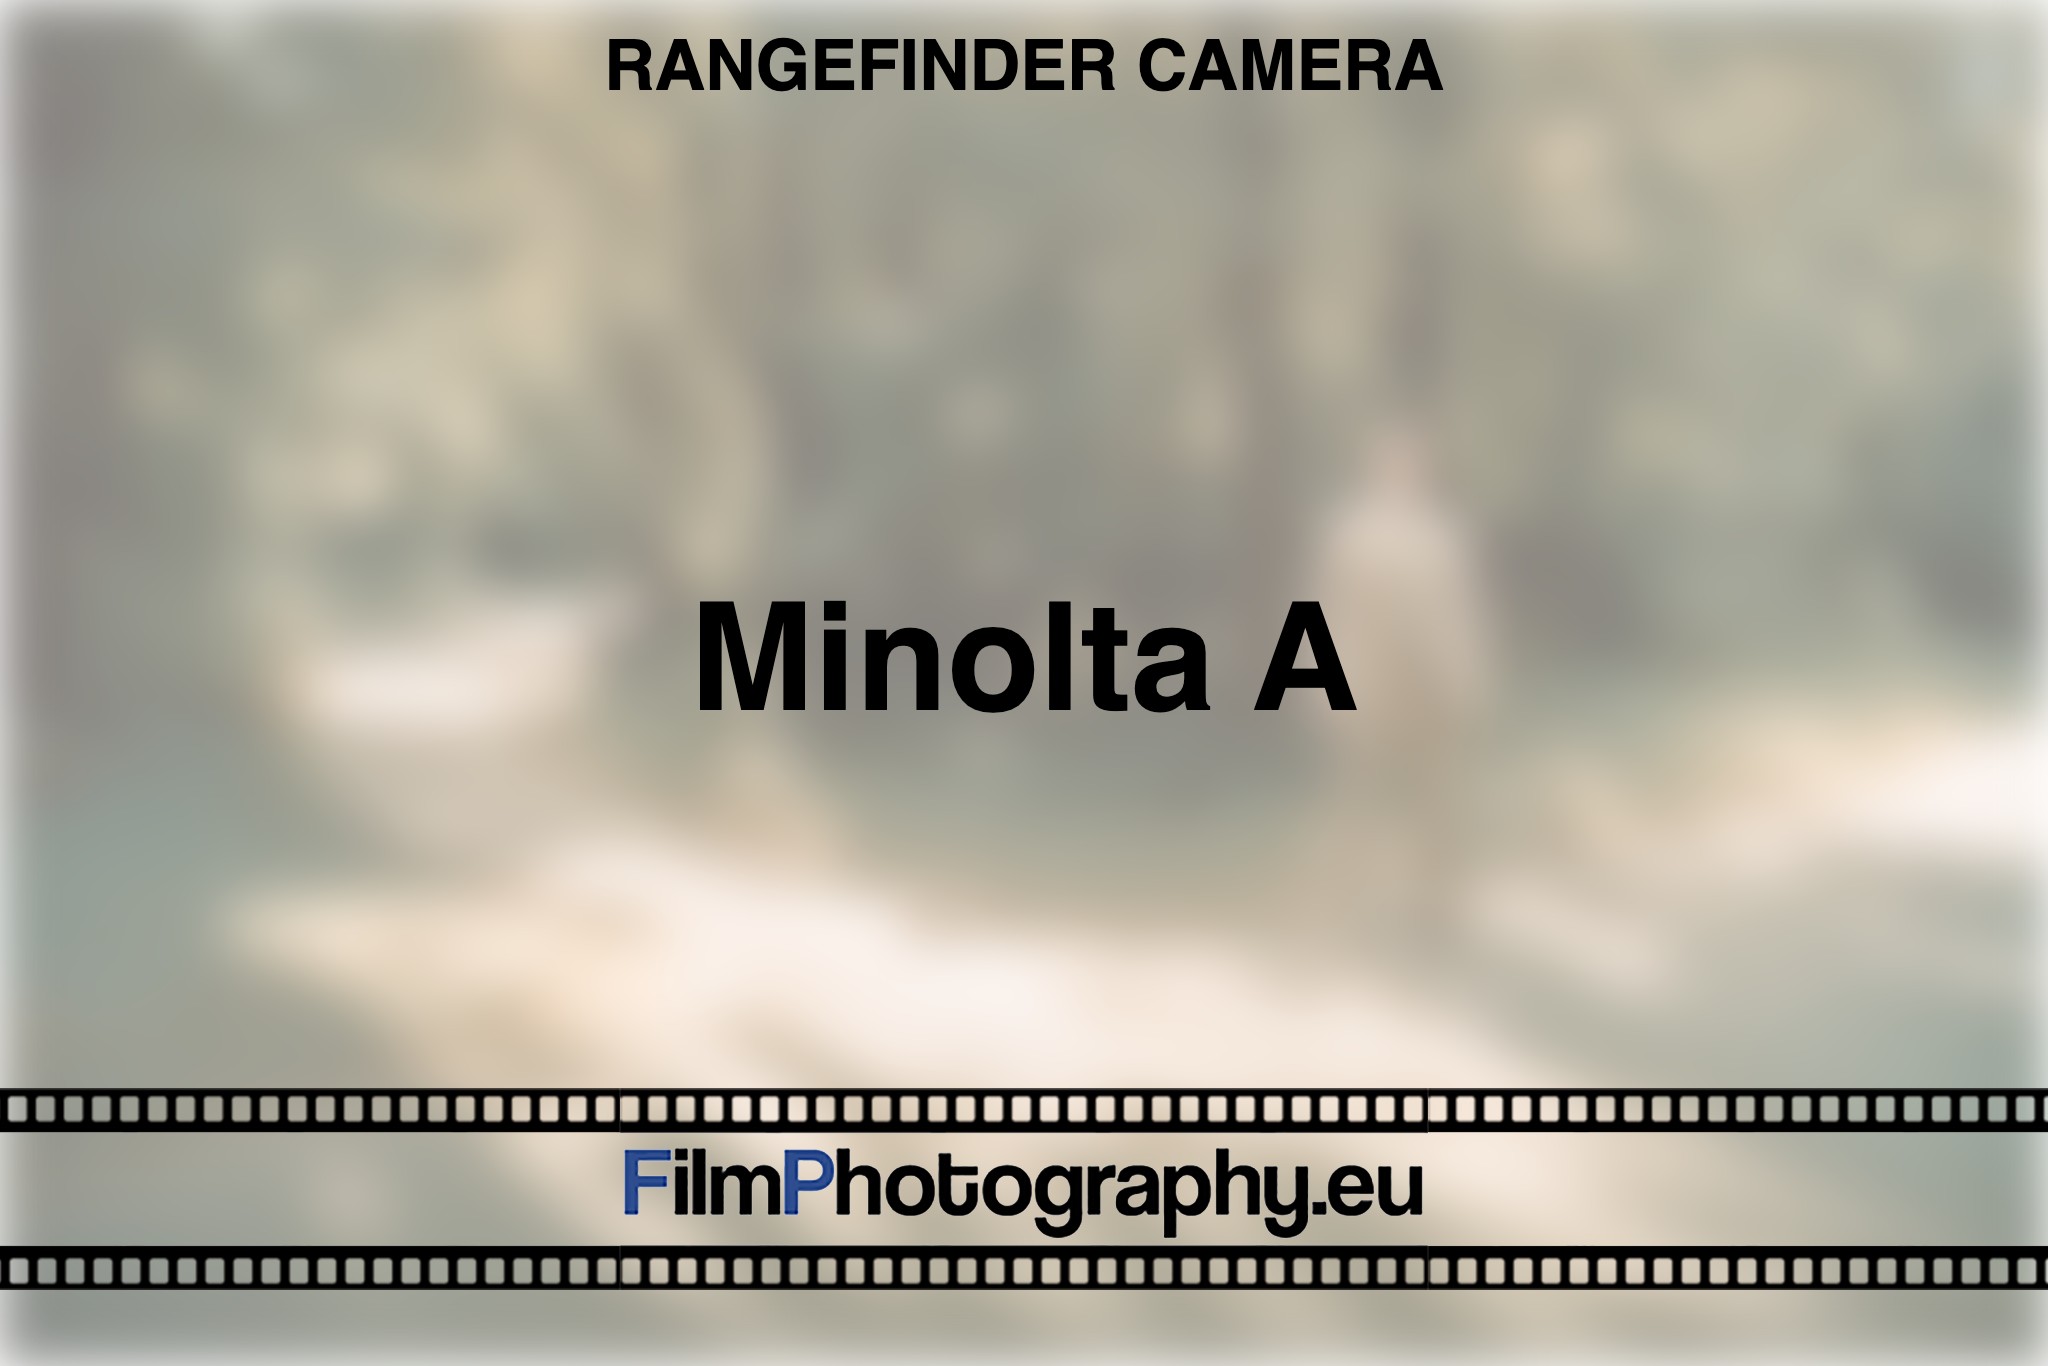 minolta-a-rangefinder-camera-bnv